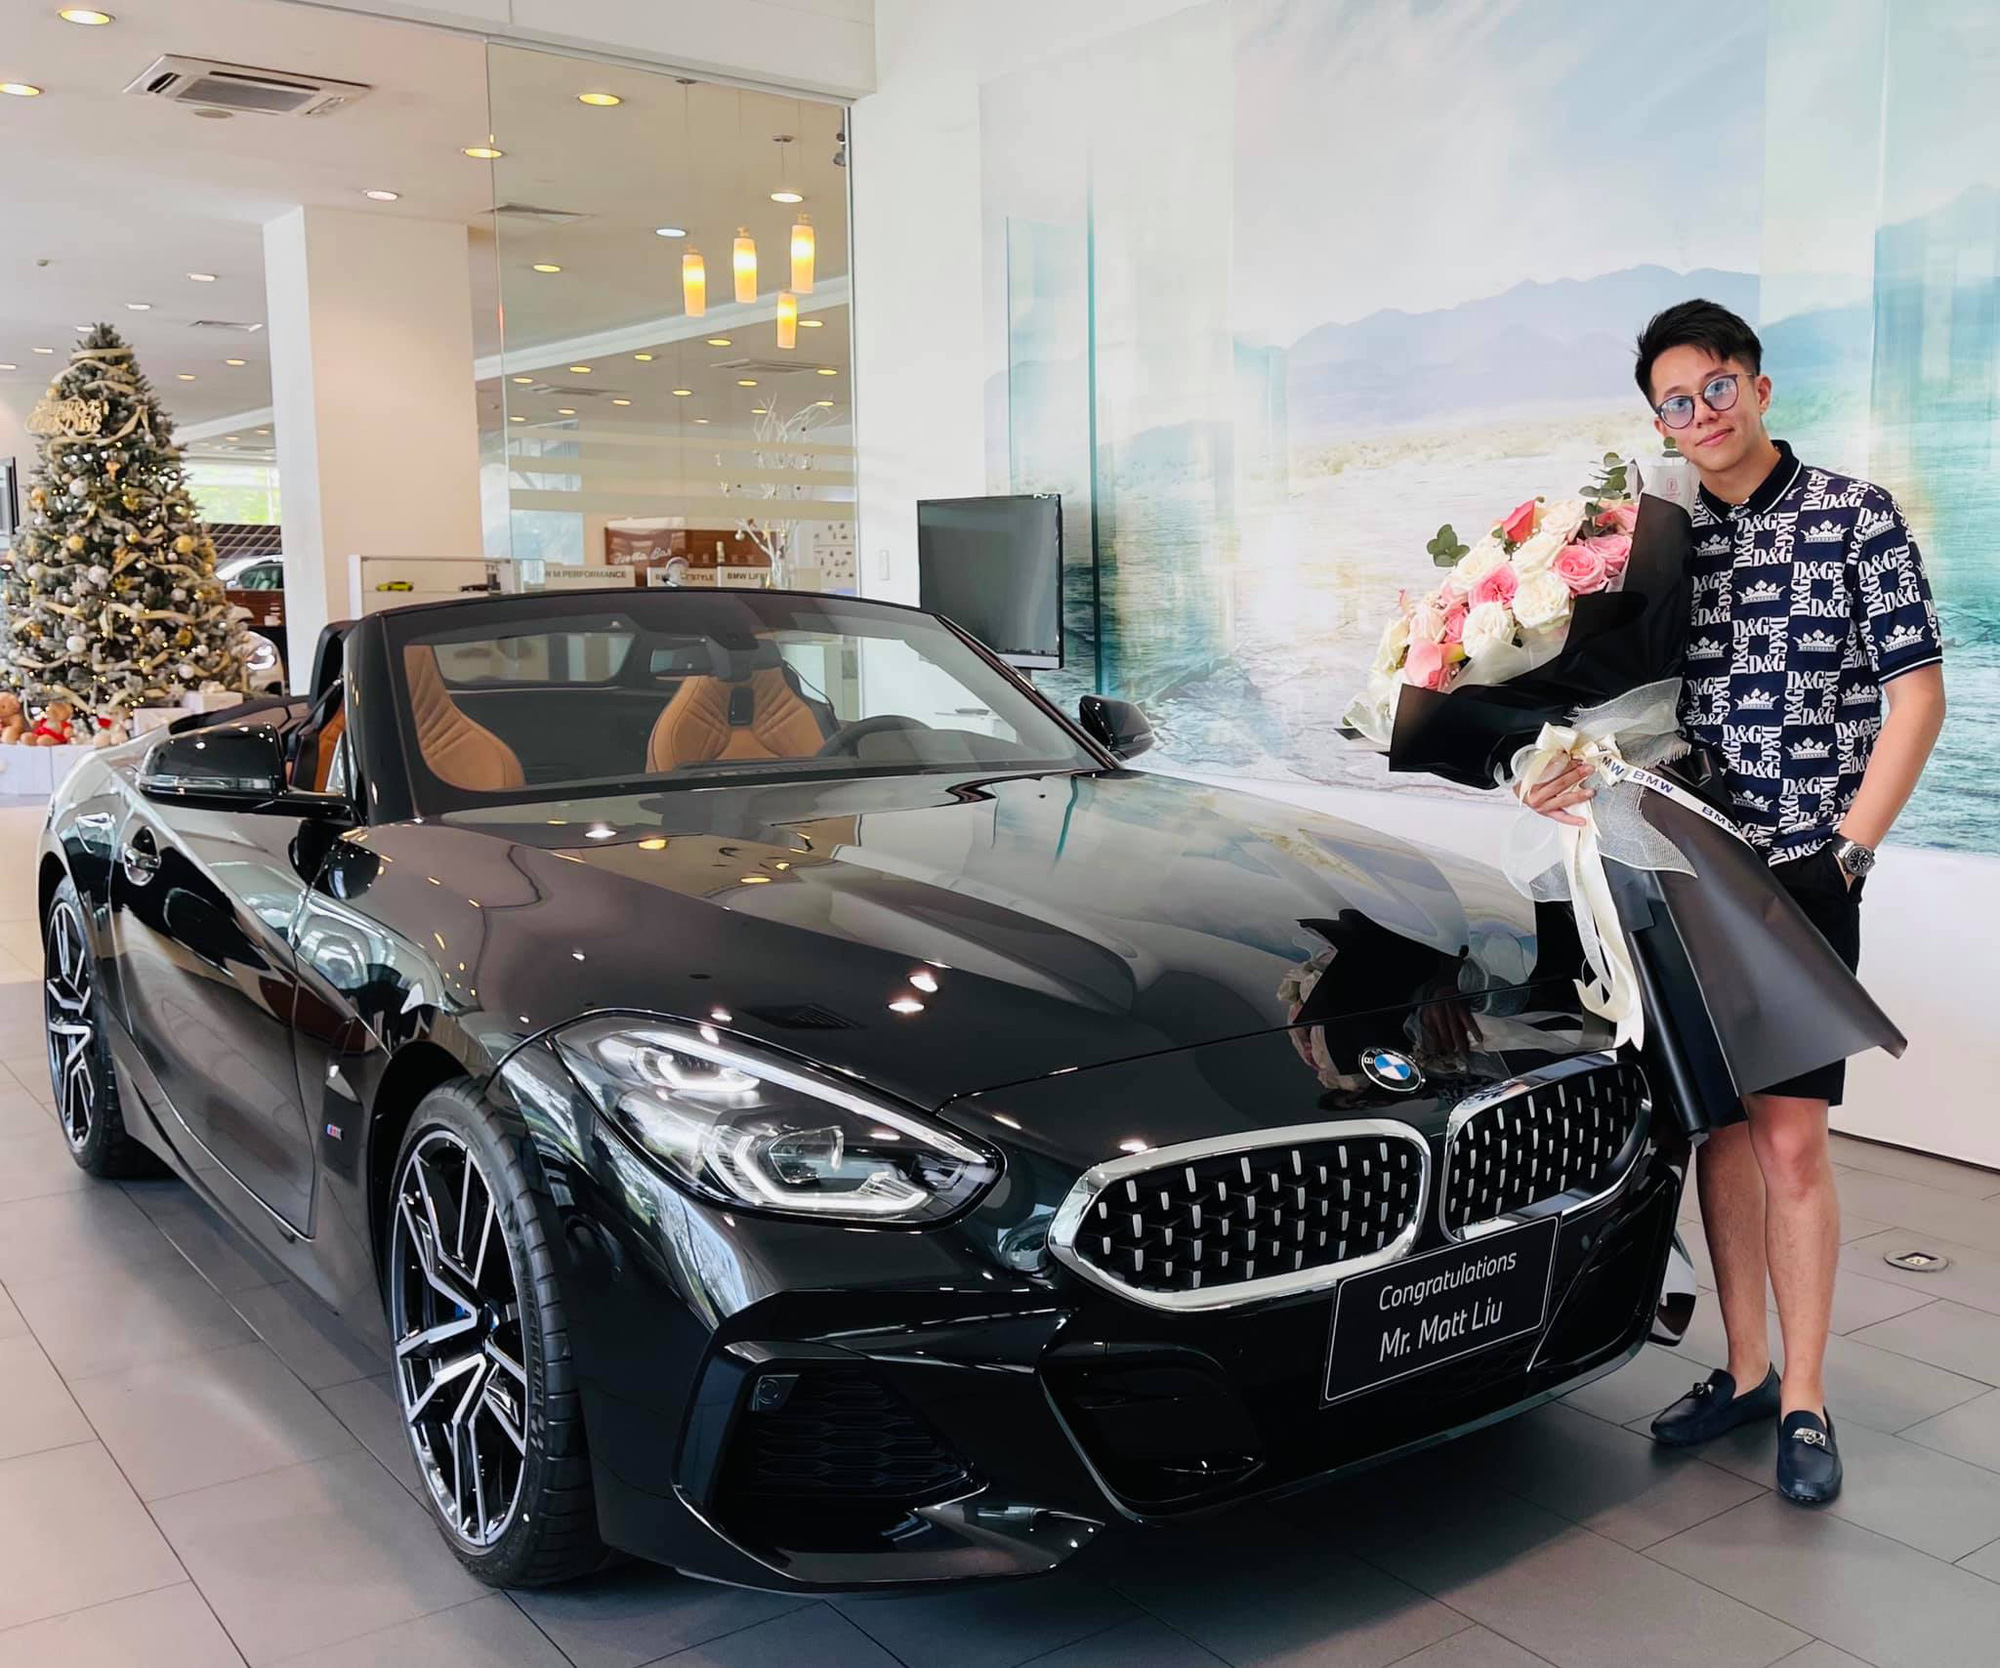 CEO Matt Liu sắm BMW Z4 giá hơn 3 tỷ đồng, không quên thả thính hoa hậu Hương Giang - Ảnh 1.